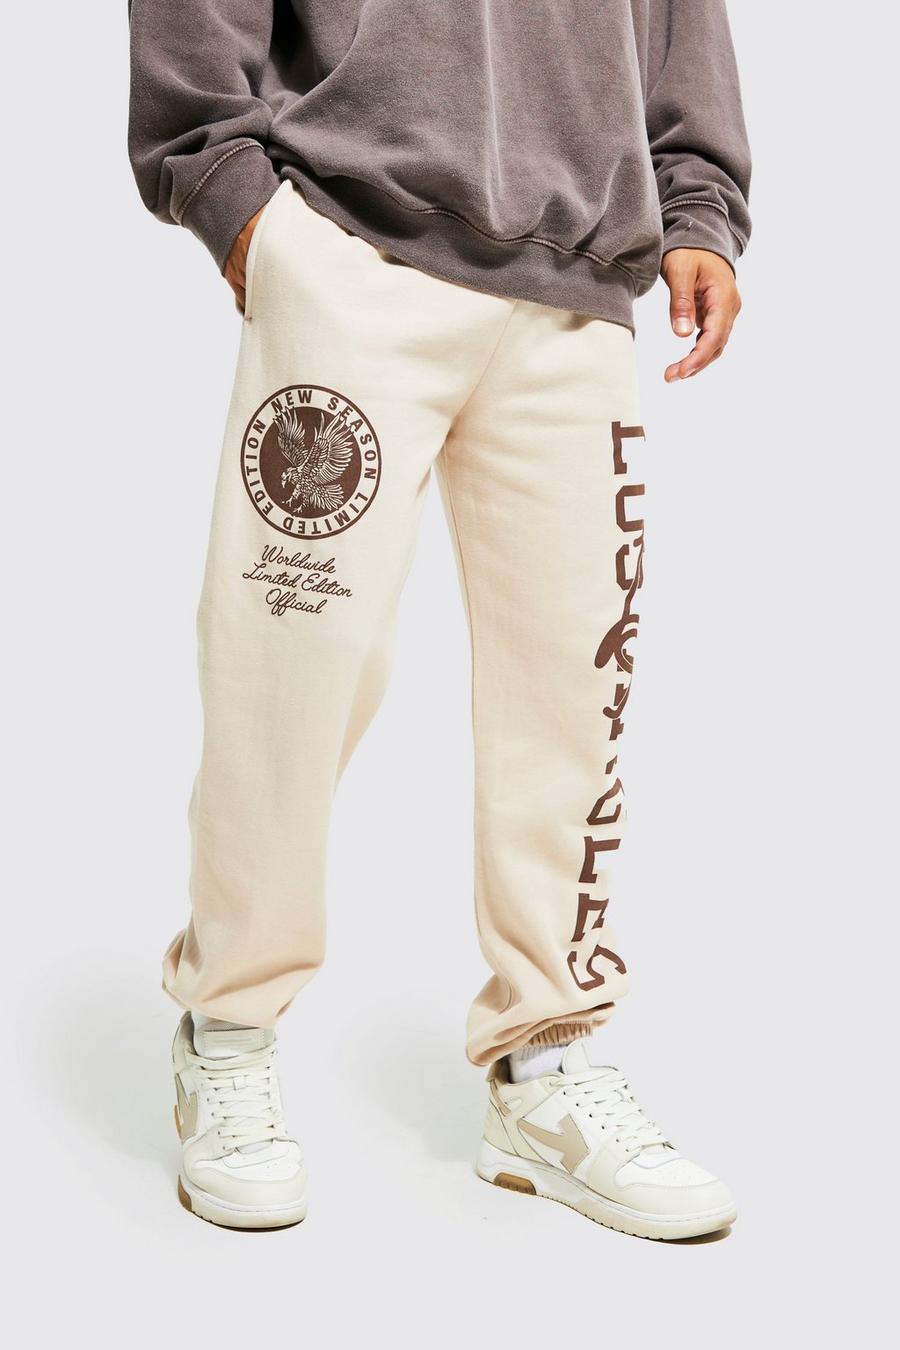 Pantalón deportivo Regular con estampado gráfico universitario de LA, Sand beige